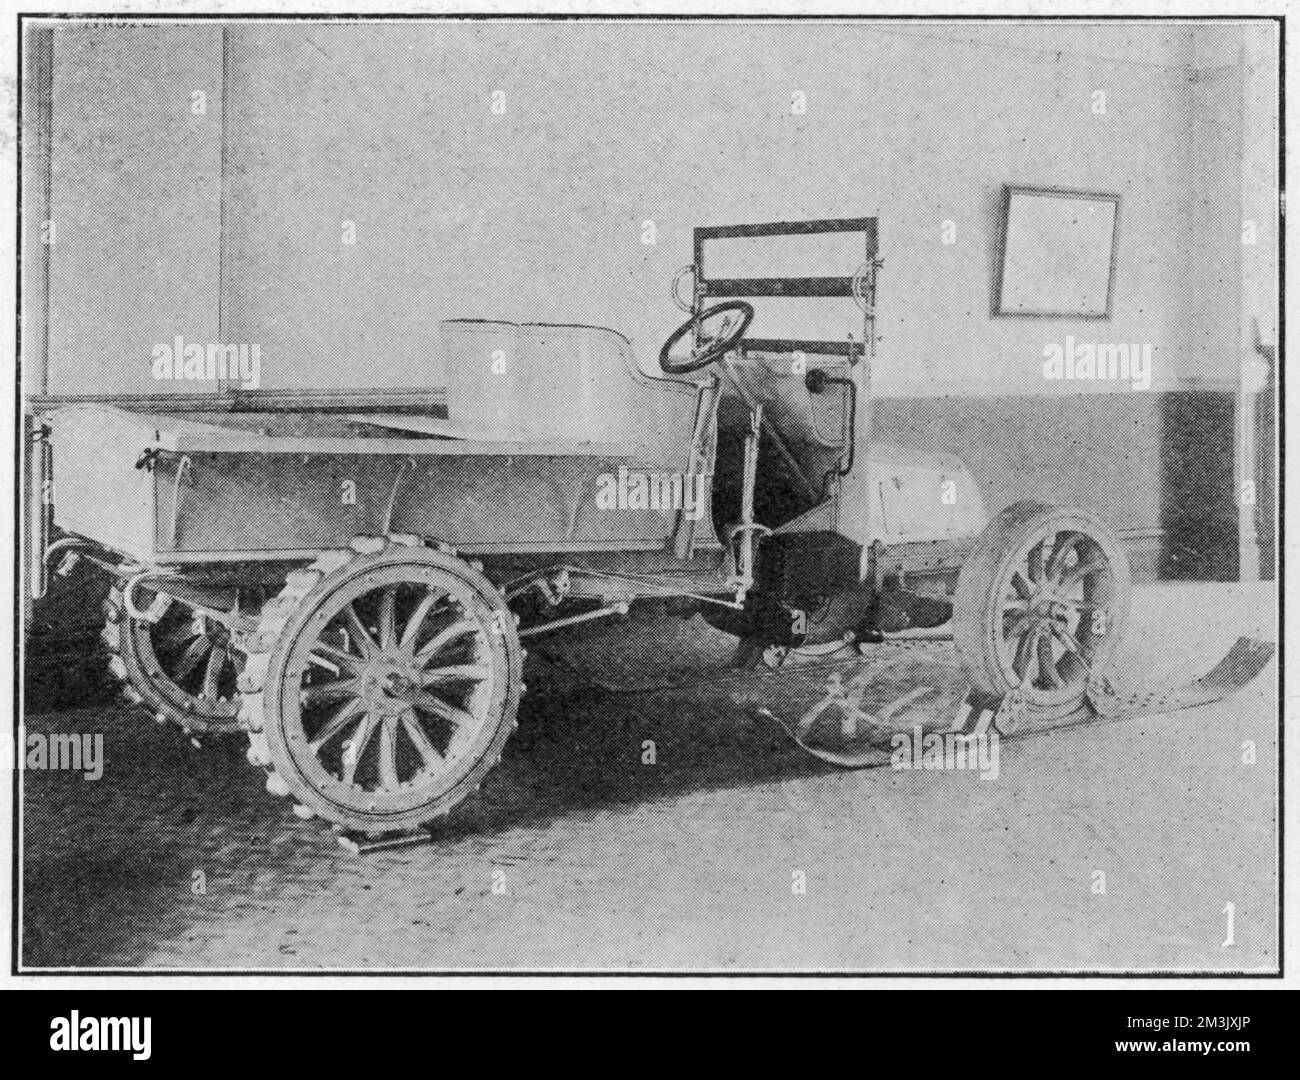 Schneewagen oder „Motorschlitten“, verwendet während der Nimrod Antarktis Expedition von 1908-09. Dieses Fahrzeug war dem Vernehmen nach sehr nützlich auf flacheren Gebieten des antarktischen Eis, aber weniger auf Steigungen oder steinigen Böden. Datum: 1909 Stockfoto